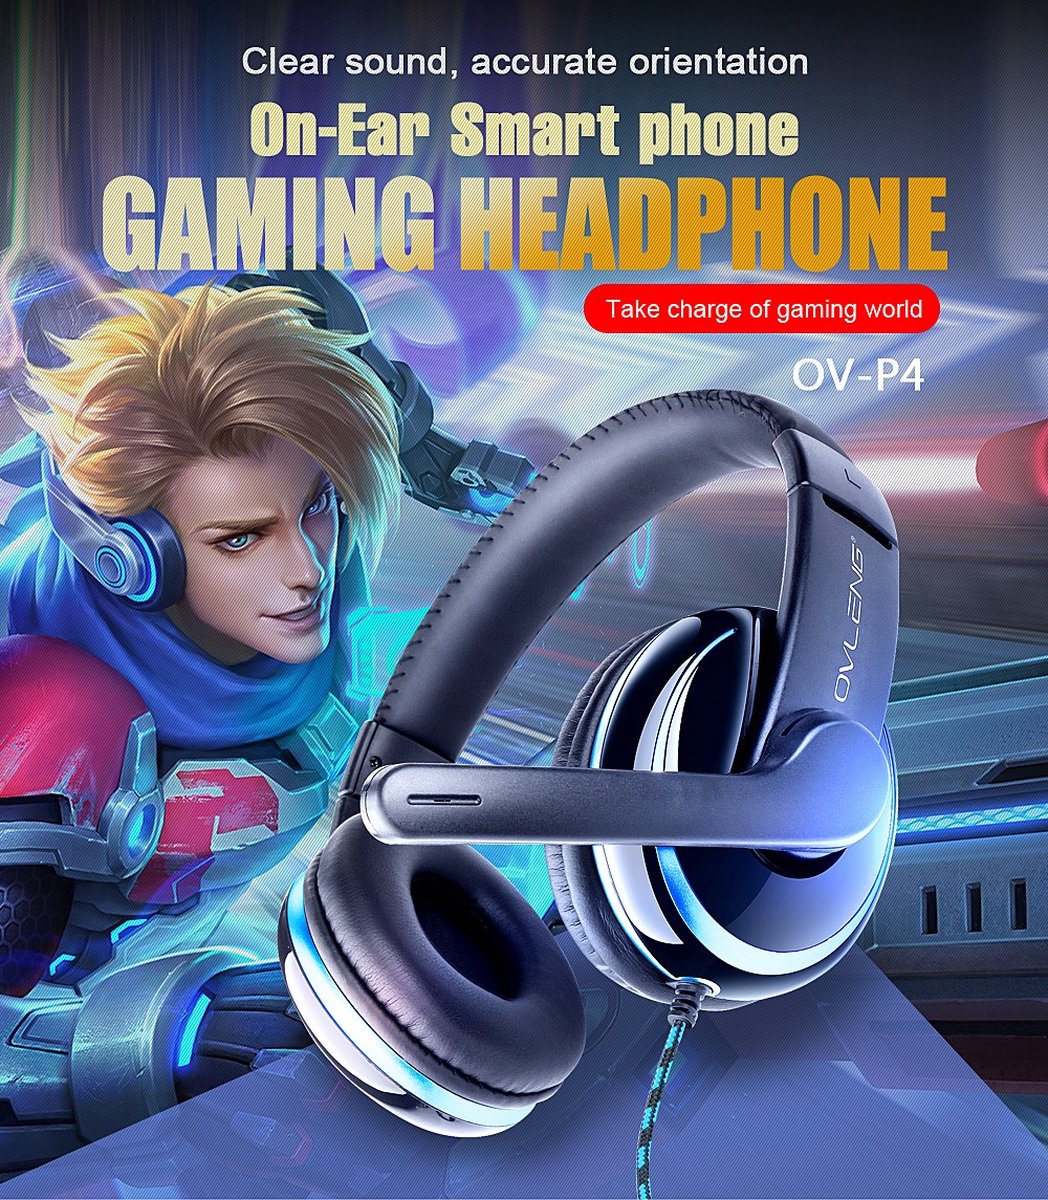 Gaming Koptelefoon/professional Gaming headset/40mm Directional Drivers voor audio precision noice-Setreo gaming headset series voor mobiel toestellen/ met kabel 3.5 Jack Kleur bekijk de foto OV-P4